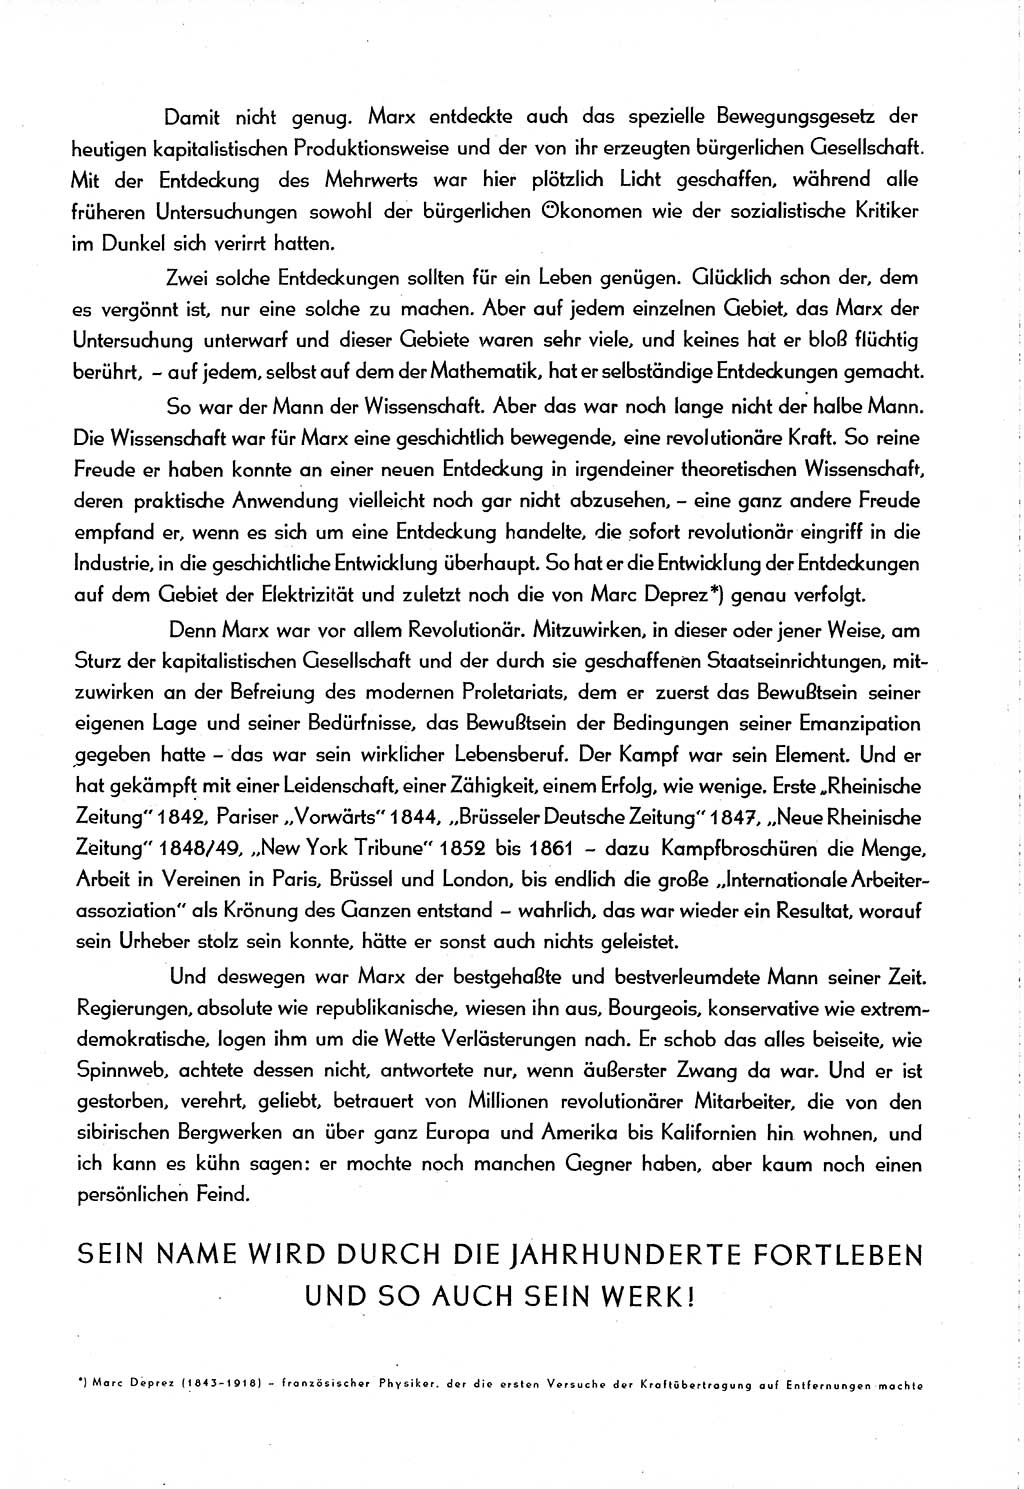 Neuer Weg (NW), Organ des Zentralkomitees (ZK) [Sozialistische Einheitspartei Deutschlands (SED)] für alle Parteiarbeiter, 8. Jahrgang [Deutsche Demokratische Republik (DDR)] 1953, Heft 5/1 (NW ZK SED DDR 1953, H. 5/1)